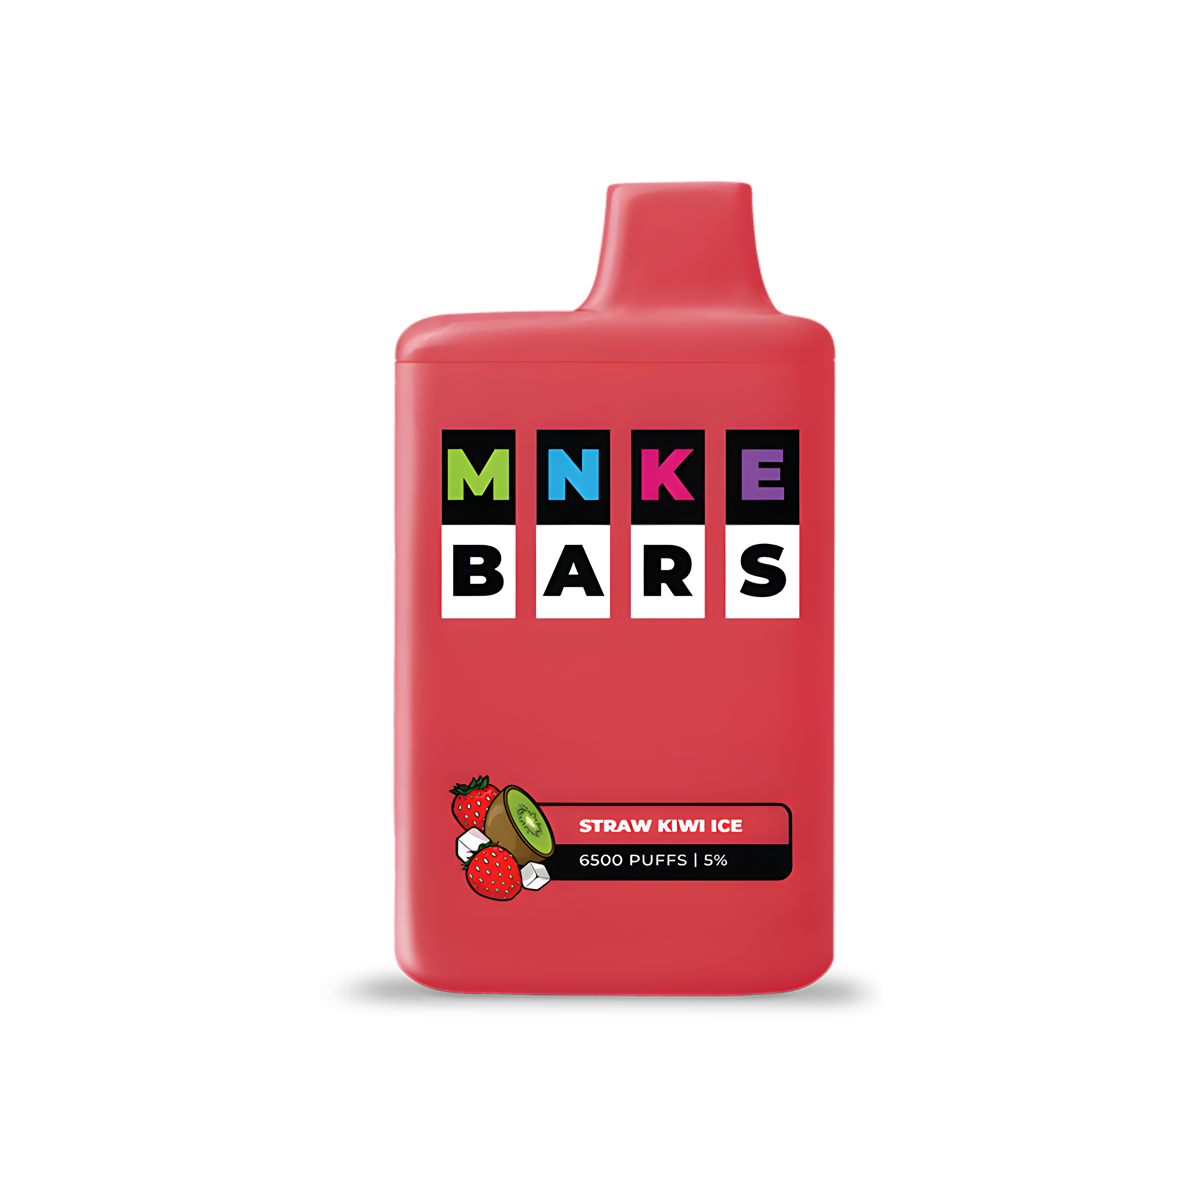 MNKE Bars 6500 Disposable Vape Straw Kiwi Ice  